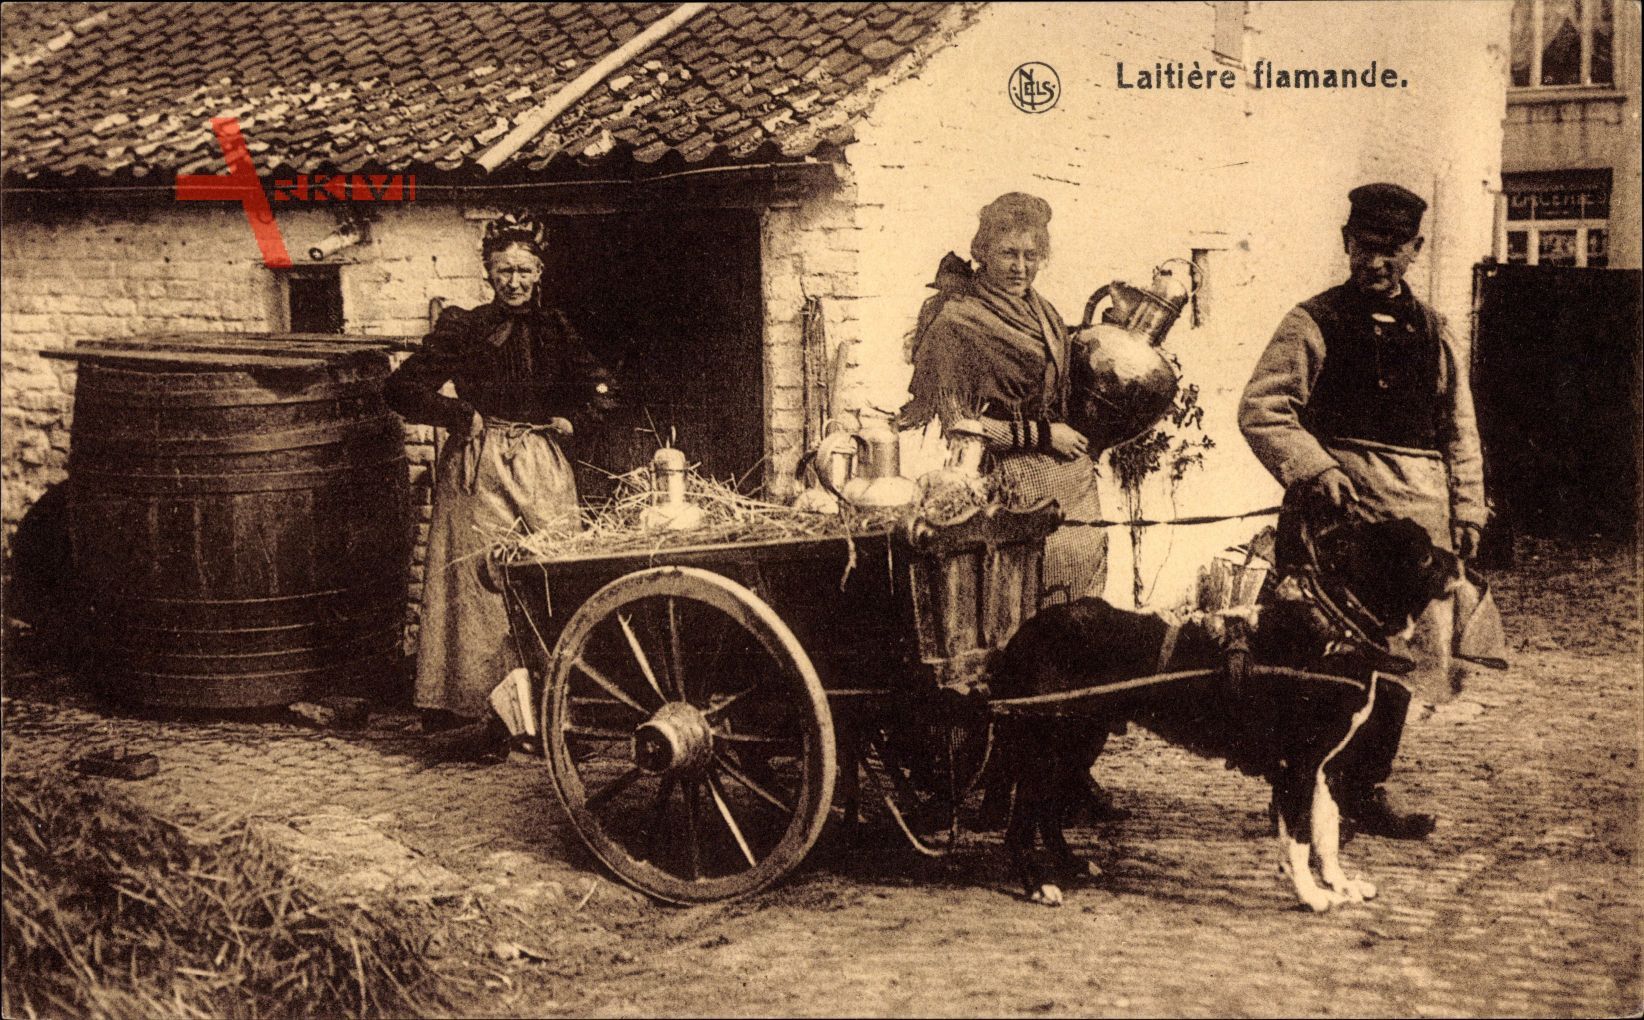 Laitiere flamande, Milchfrau in Tracht mit Hundekarren